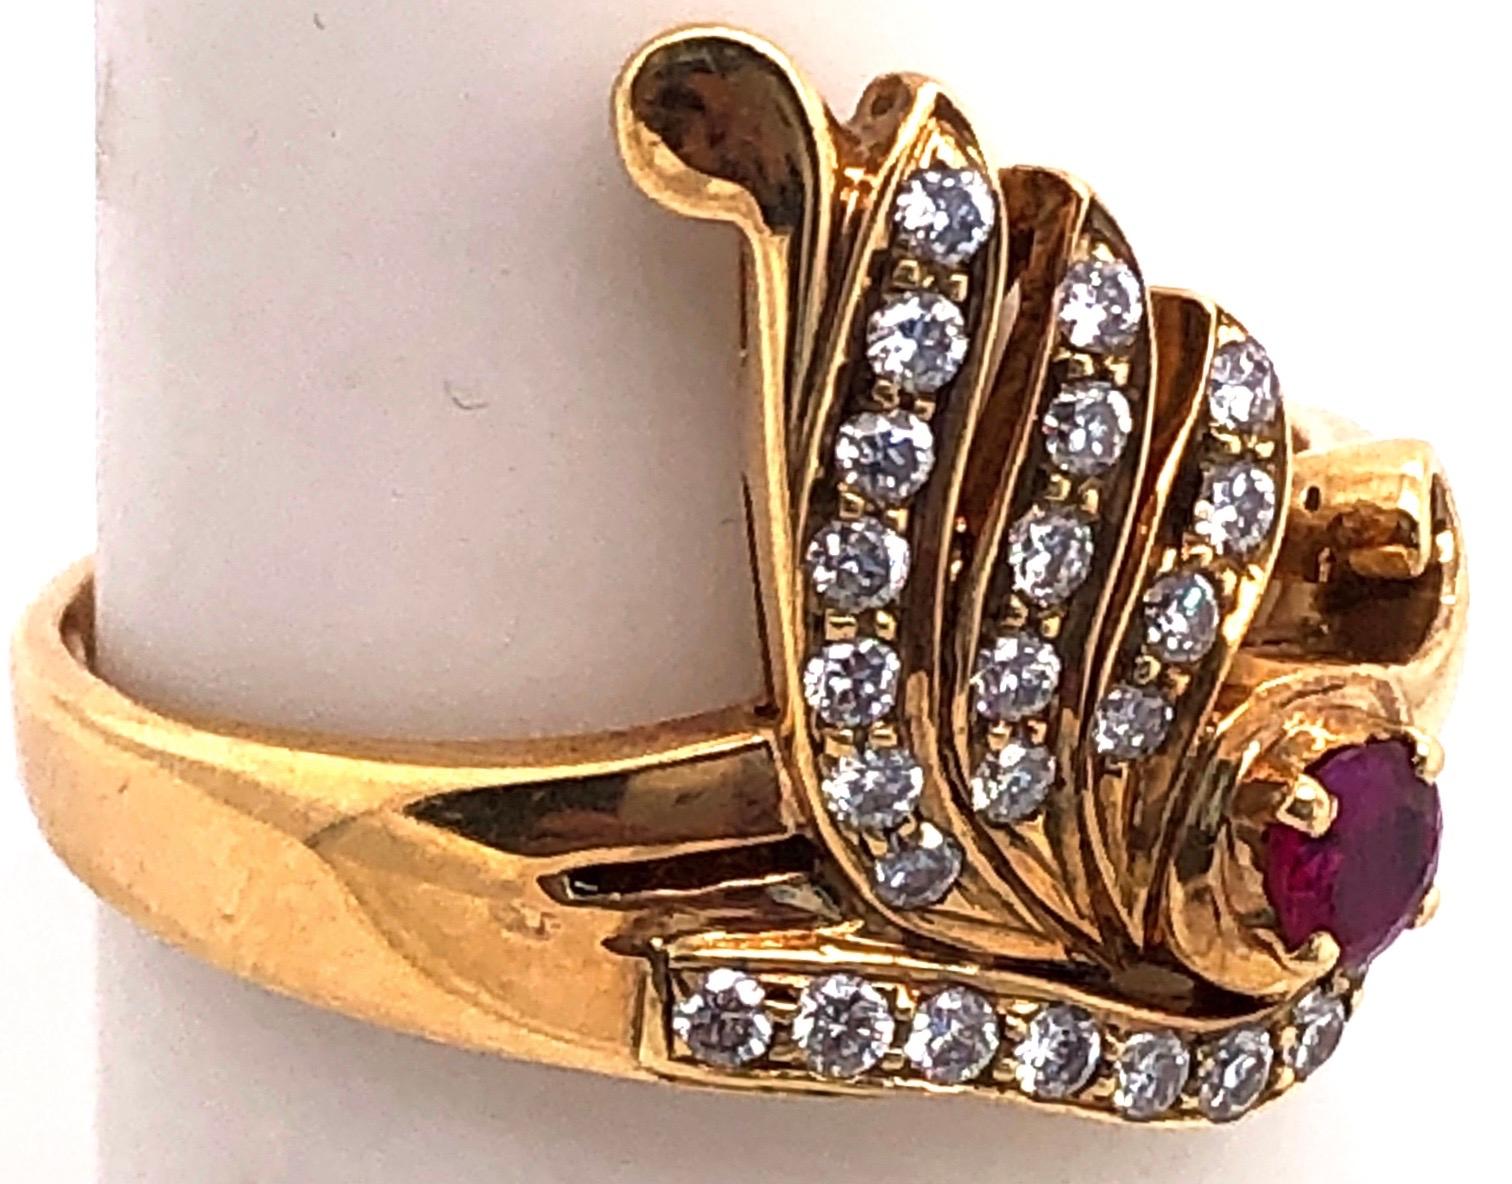 Zeitgenössischer Ring aus 14 Karat Gelbgold mit Rubin und Diamant
0,40 Gesamtgewicht der Diamanten.
Größe 6.5
3,70 Gramm Gesamtgewicht.